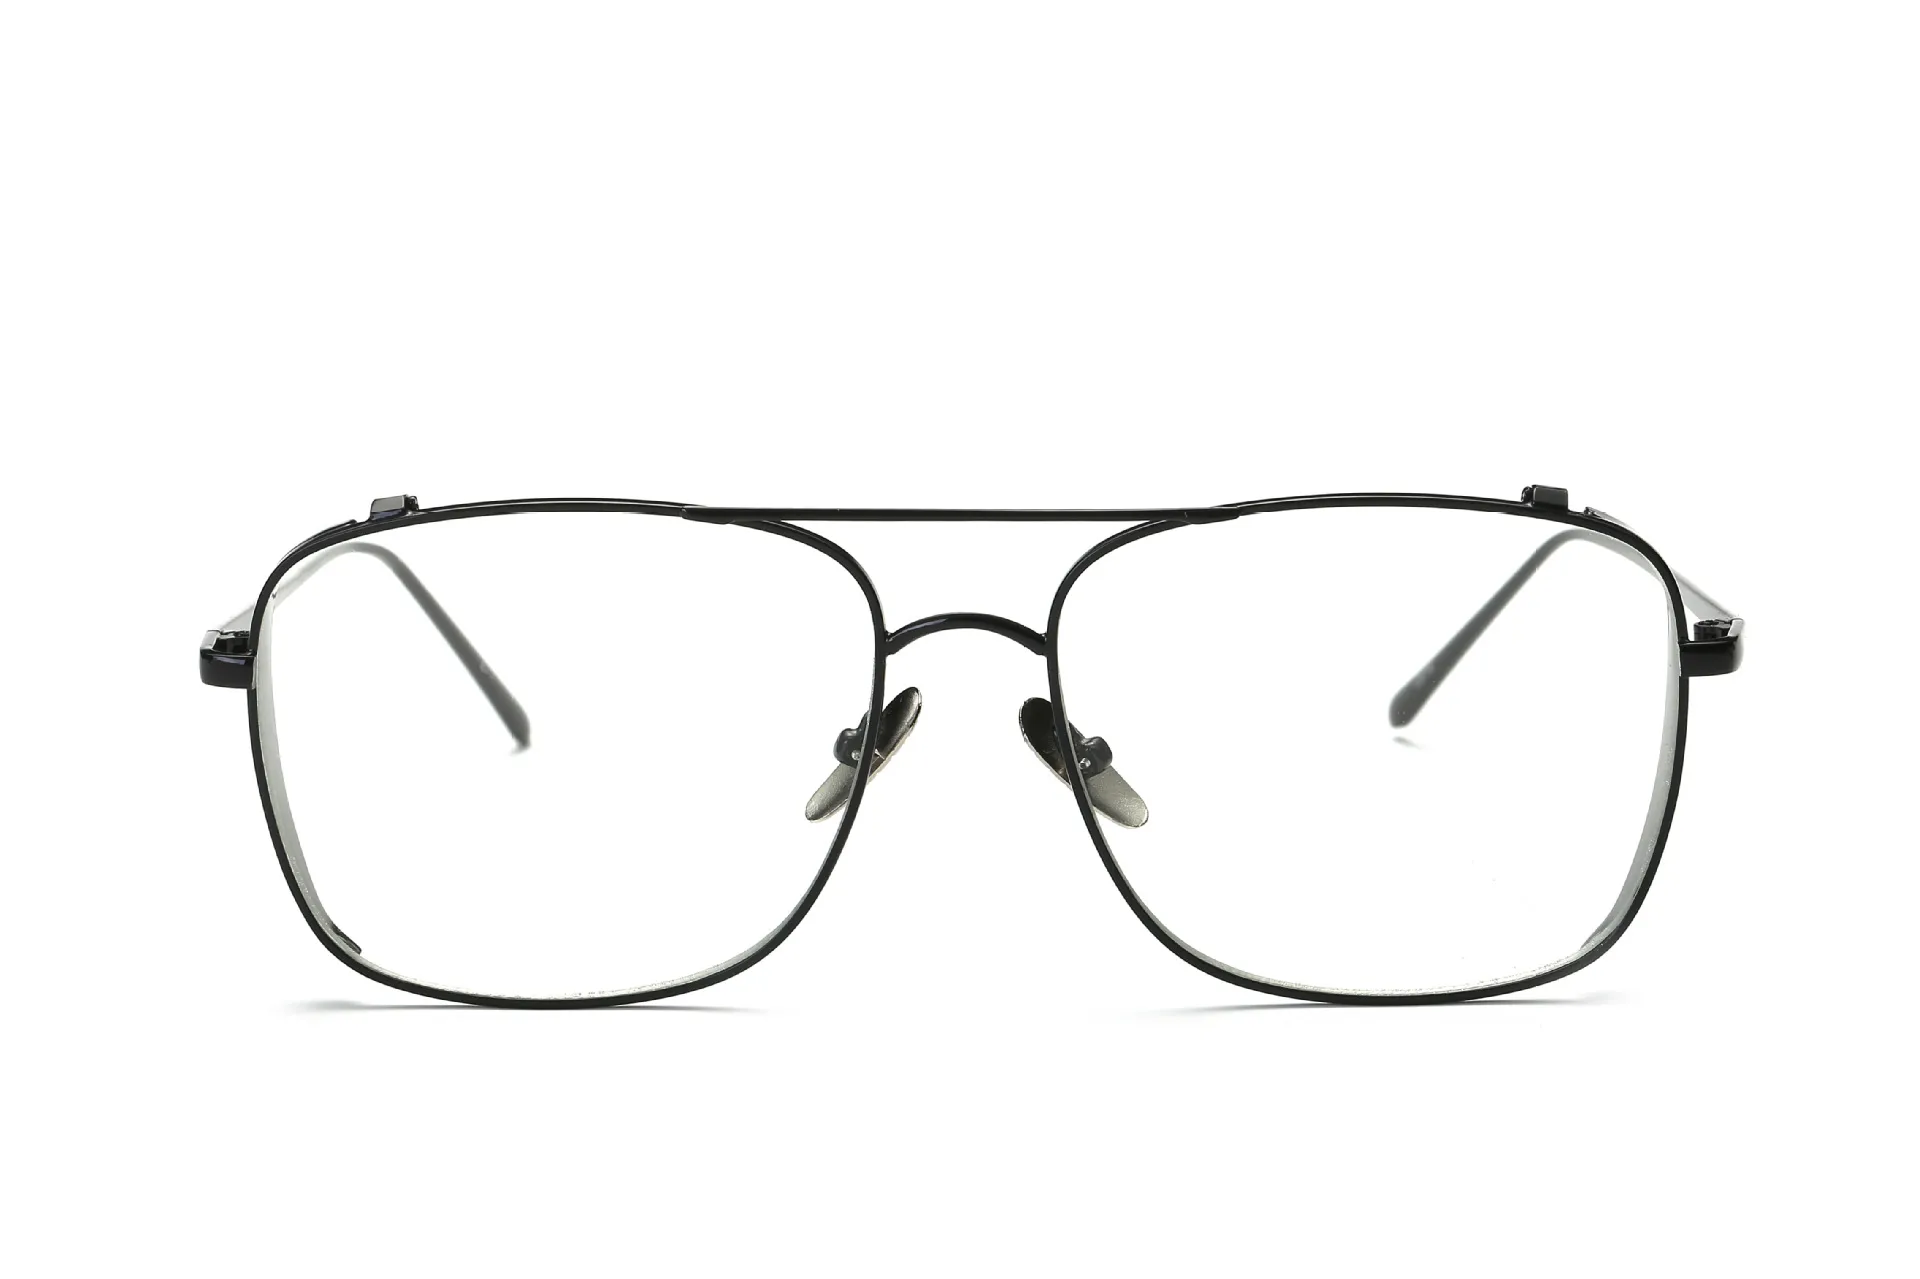 Vente en gros-2019 nouvelles lunettes de soleil miroir plat pour femmes cadre en or lunette métal es chic dames été lunettes de soleil argentées